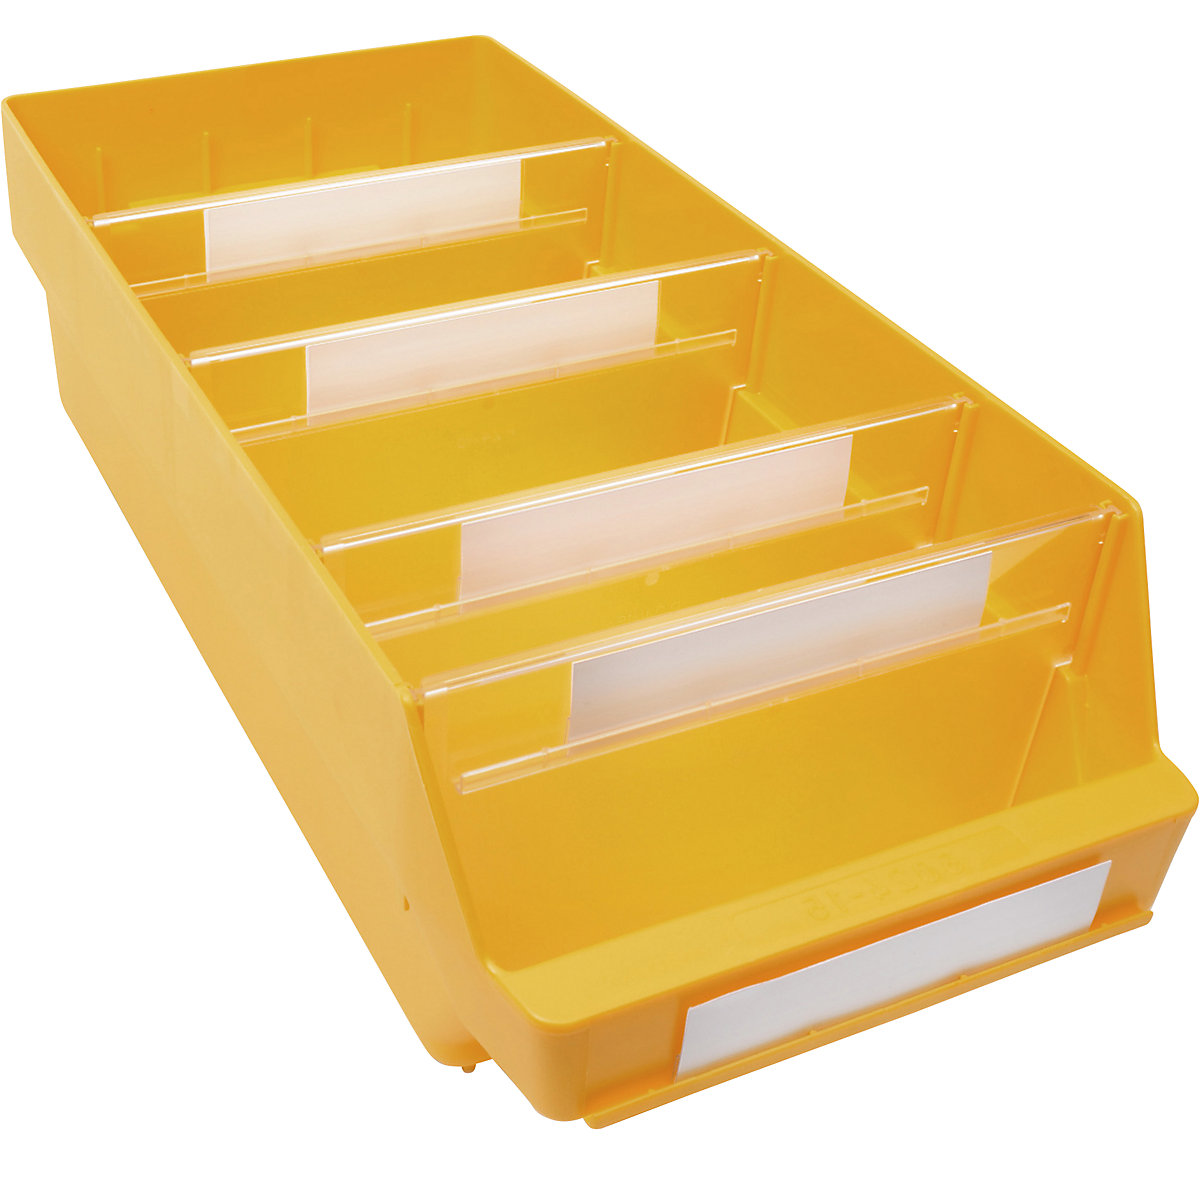 Regalkasten aus hochschlagfestem Polypropylen STEMO, gelb, LxBxH 500 x 240 x 150 mm, VE 10 Stk-19